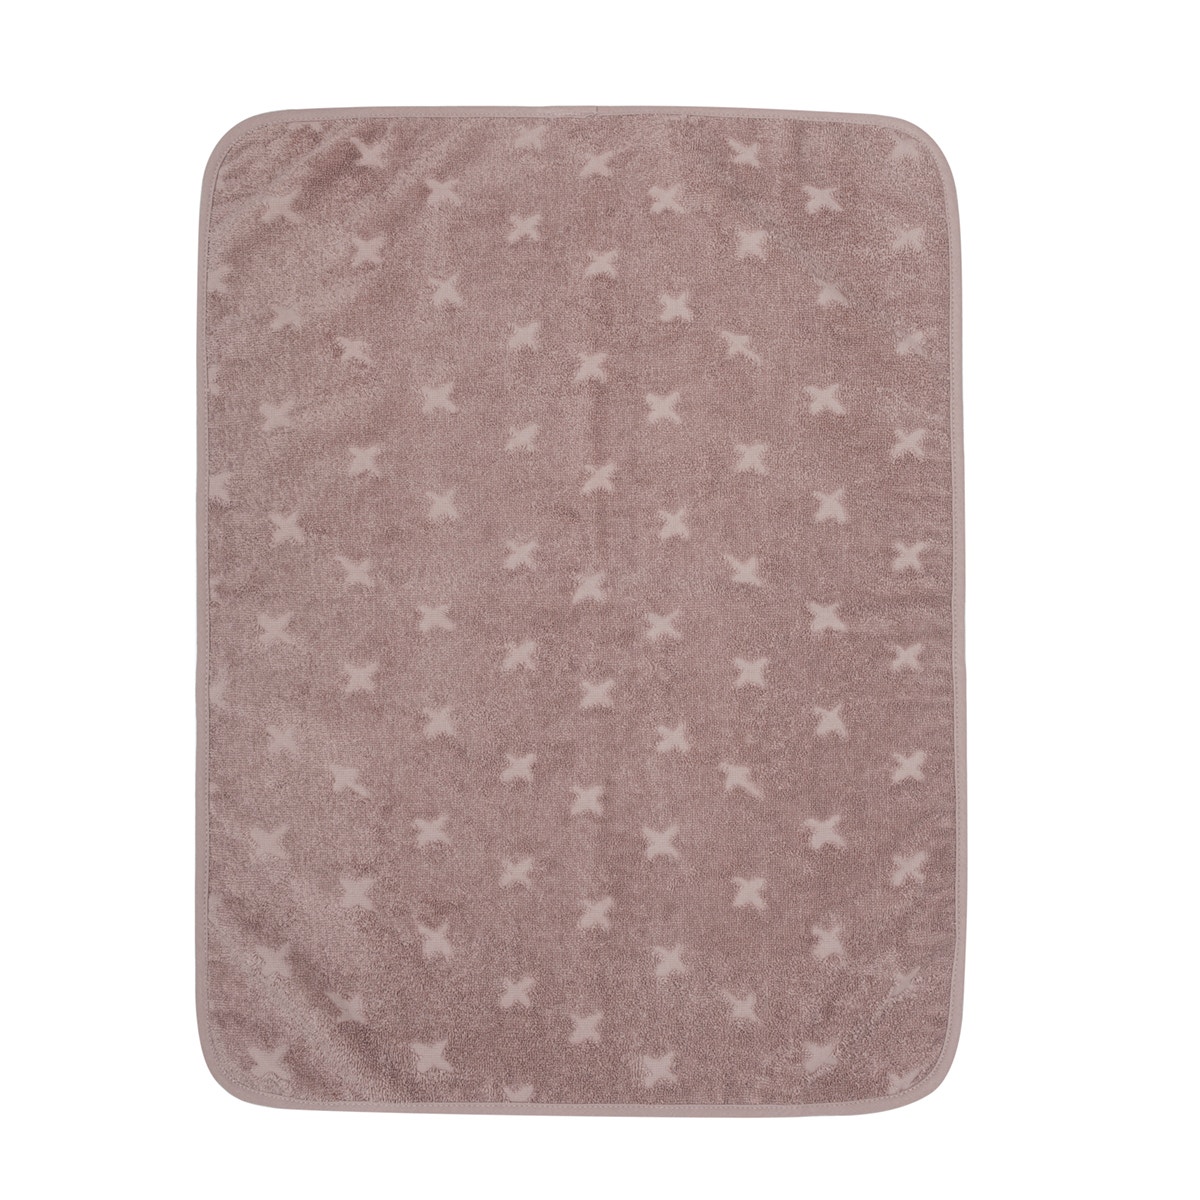 MAMA.LICIOUS müsli Nursery towel -Rose Wood - 1569008400